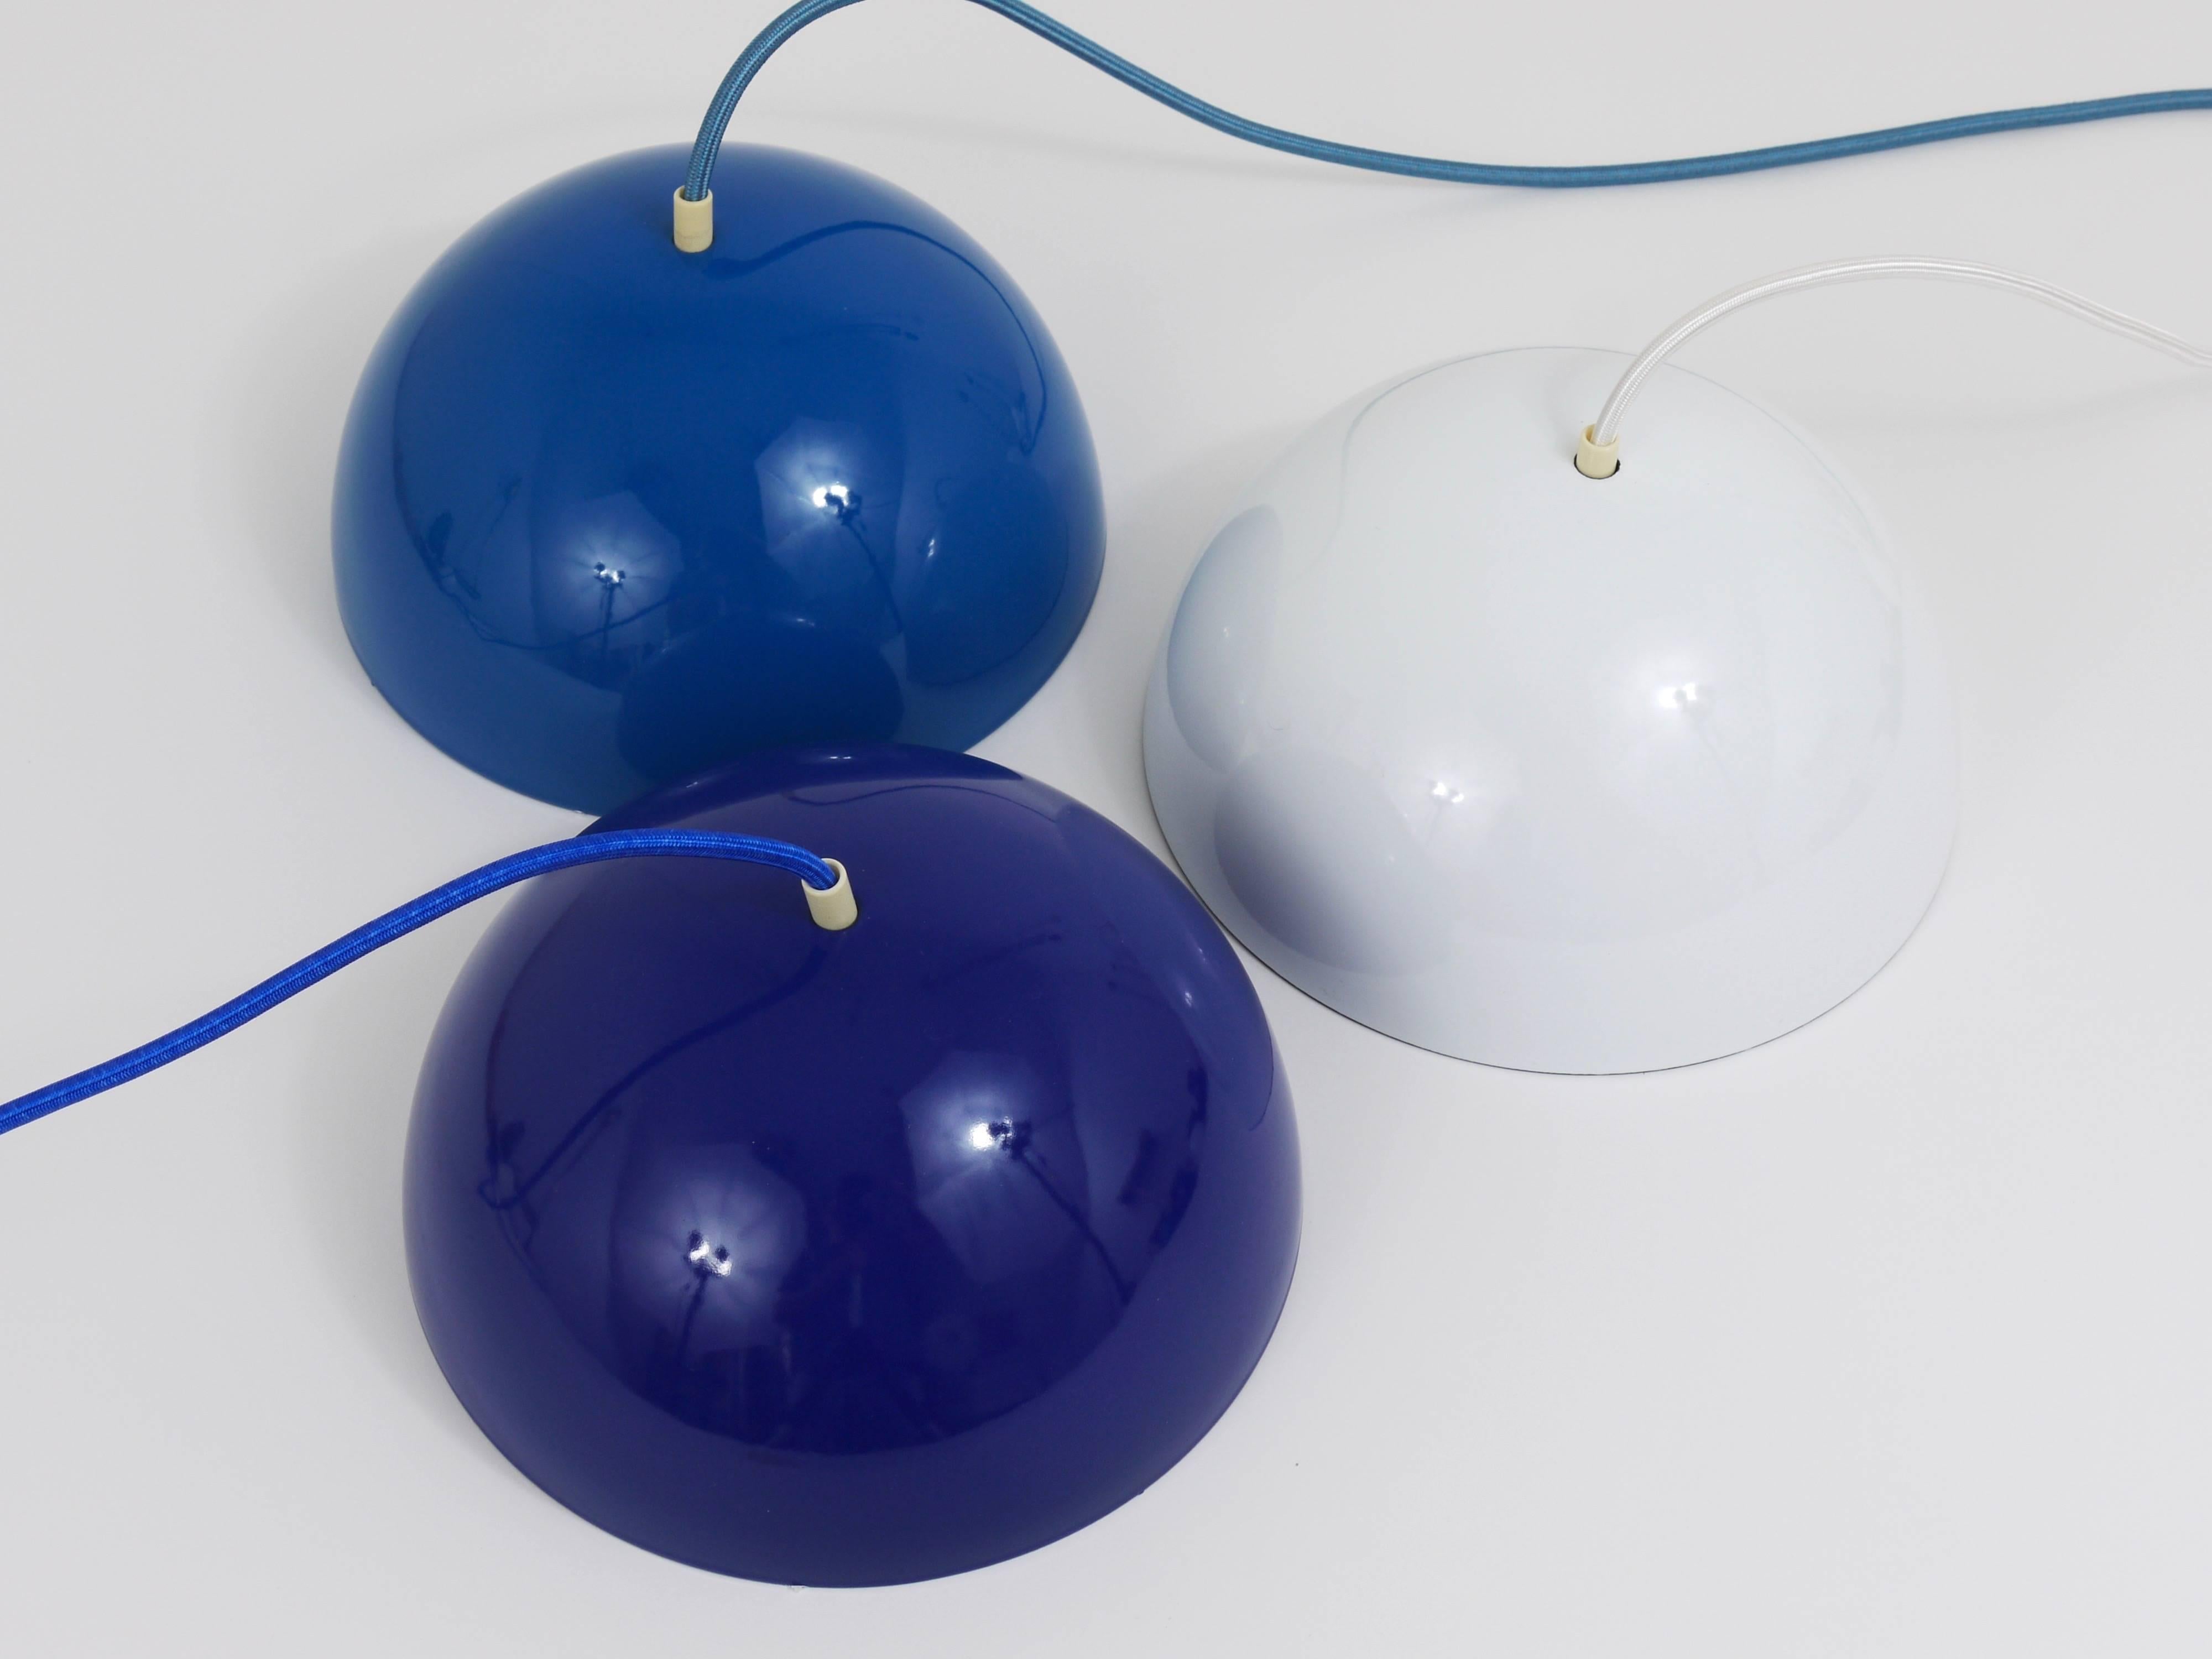 Eine ikonische kobaltblaue Blumentopf-Pendelleuchte, 1969 von Verner Panton für Louis Pulsen, Dänemark, entworfen. Eine einfache, aber schöne Deckenleuchte, bestehend aus zwei emaillierten halbkugelförmigen Lampenschirmen, die sich gegenüberstehen.